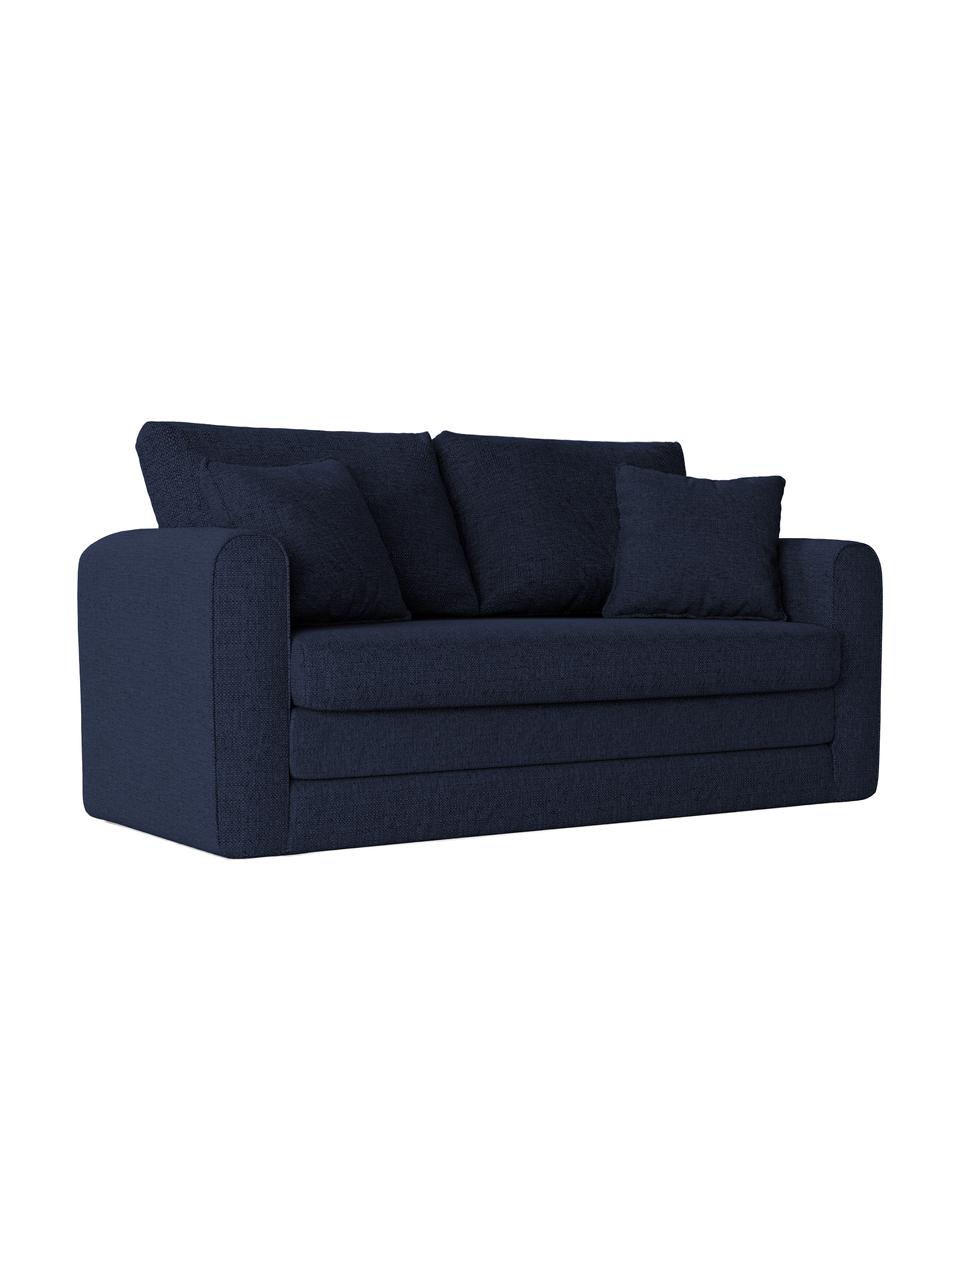 Sofa rozkładana Lido (2-osobowa), Tapicerka: poliester imitujący len D, Nogi: tworzywo sztuczne, Ciemny niebieski, S 158 x G 69 cm